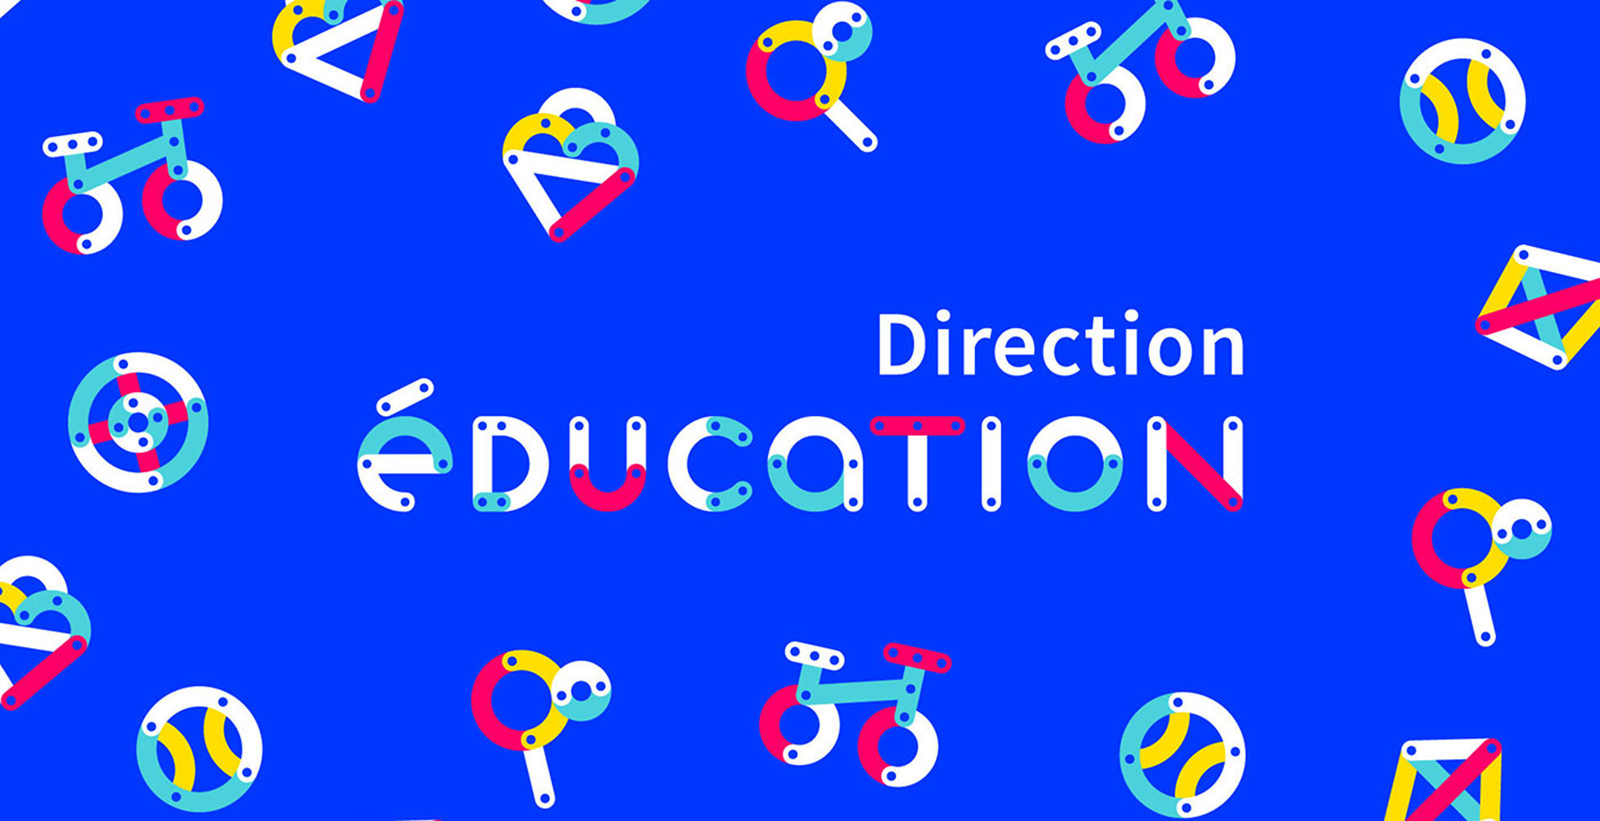 Direction Education 教育机构品牌VI设计欣赏-深圳VI设计2